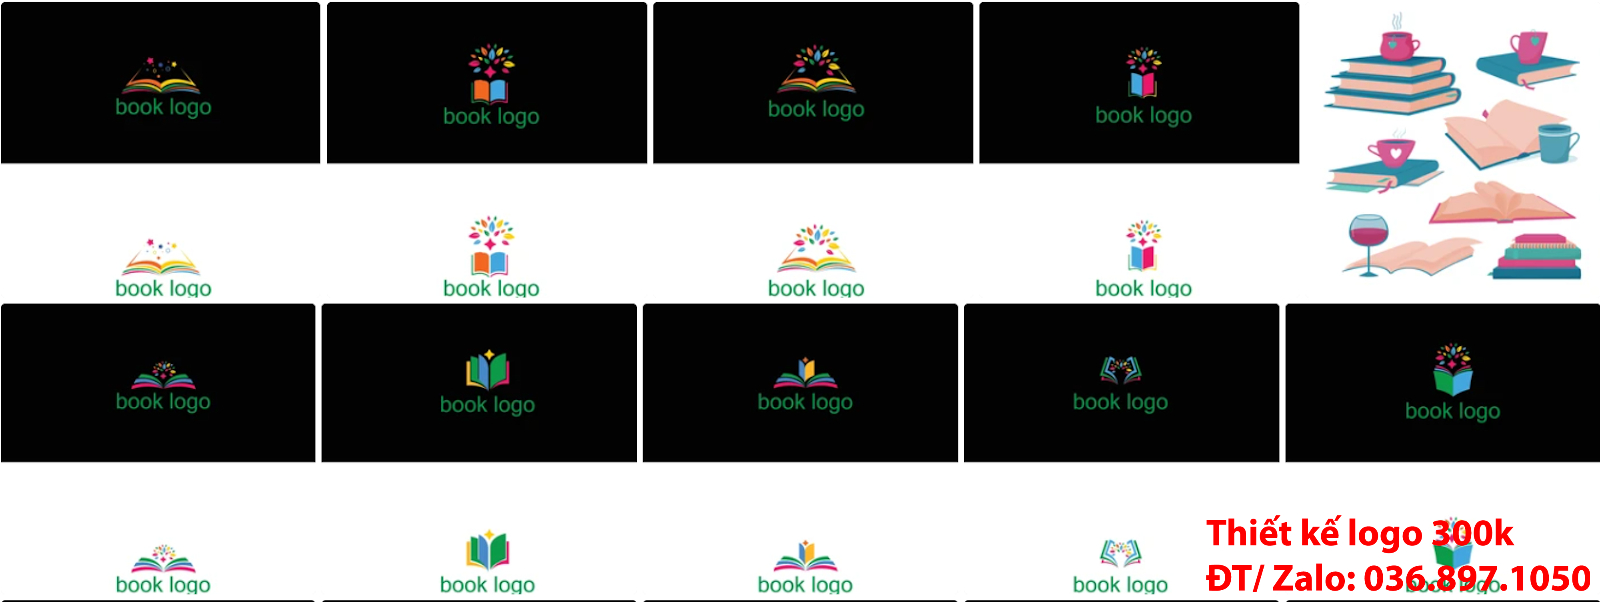 Tạo mẫu logo nhà sách sang trọng khác biệt giá rẻ đẹp uy tín chất lượng 500k